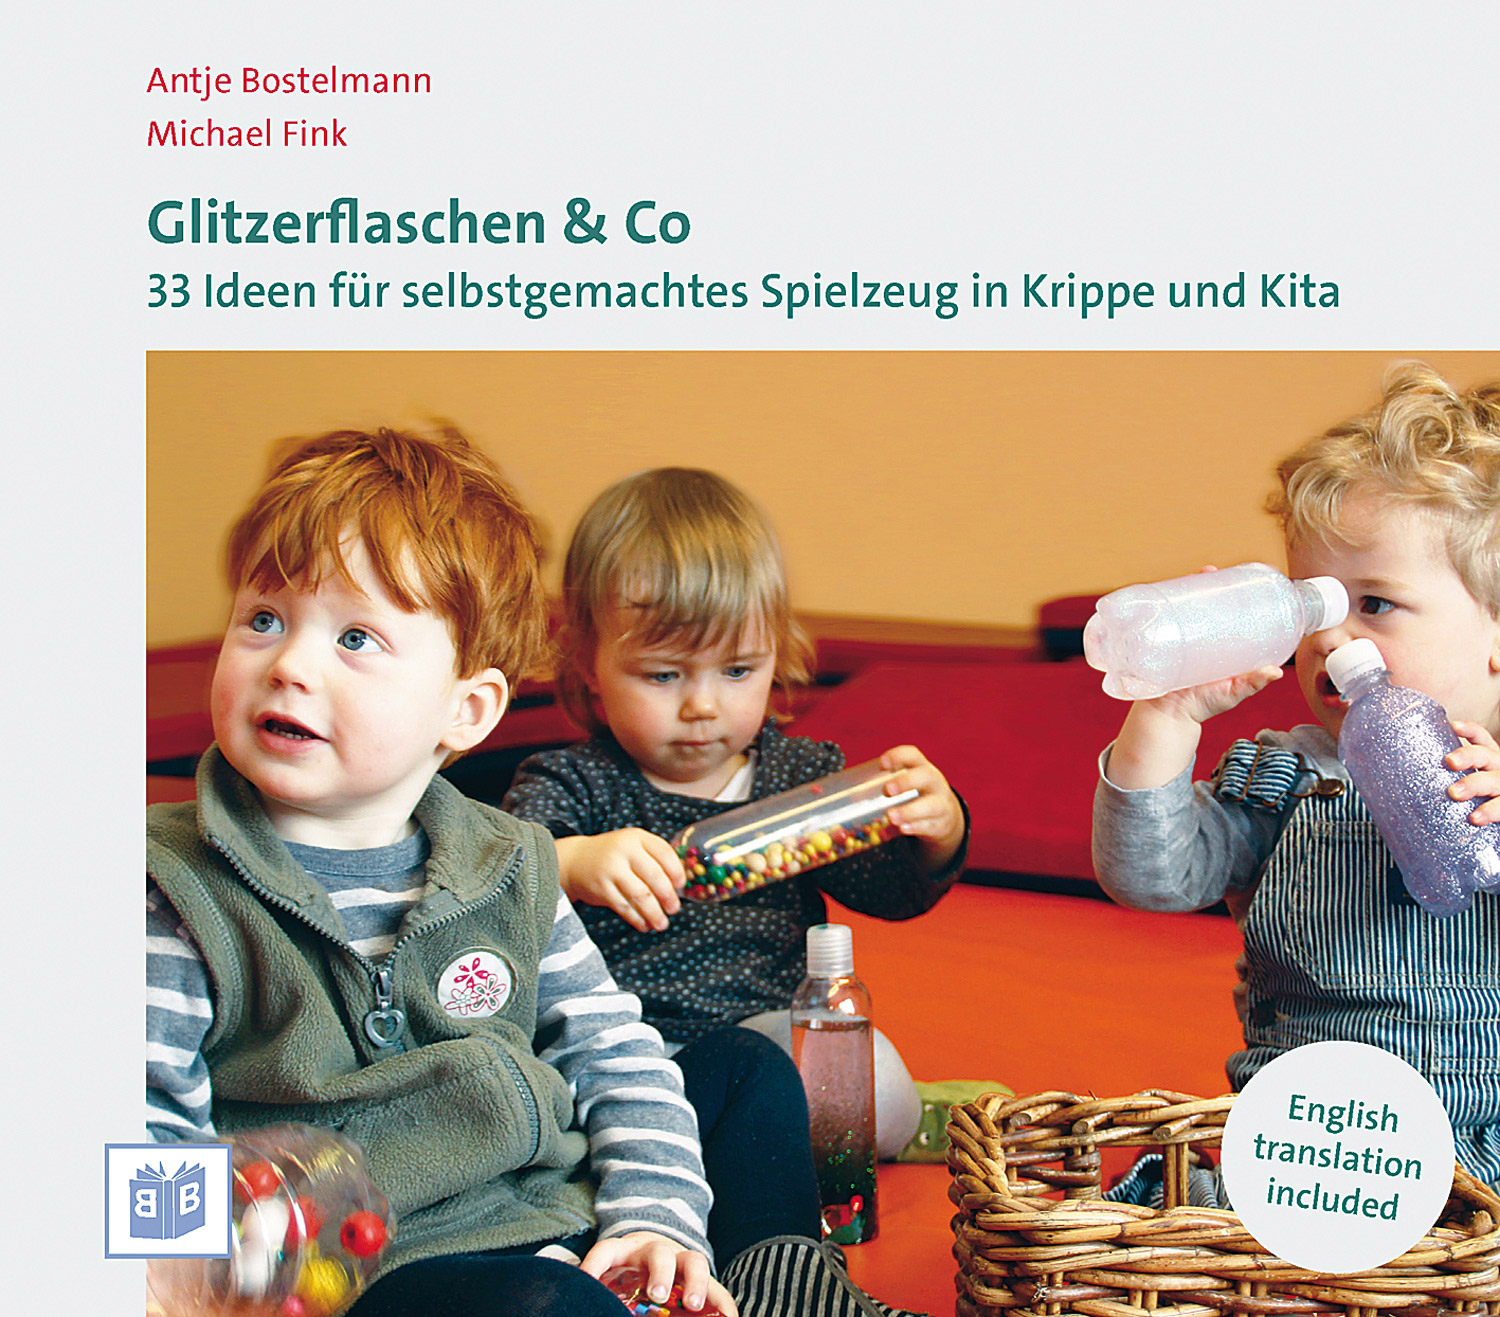 Glitzerflaschen & Co.